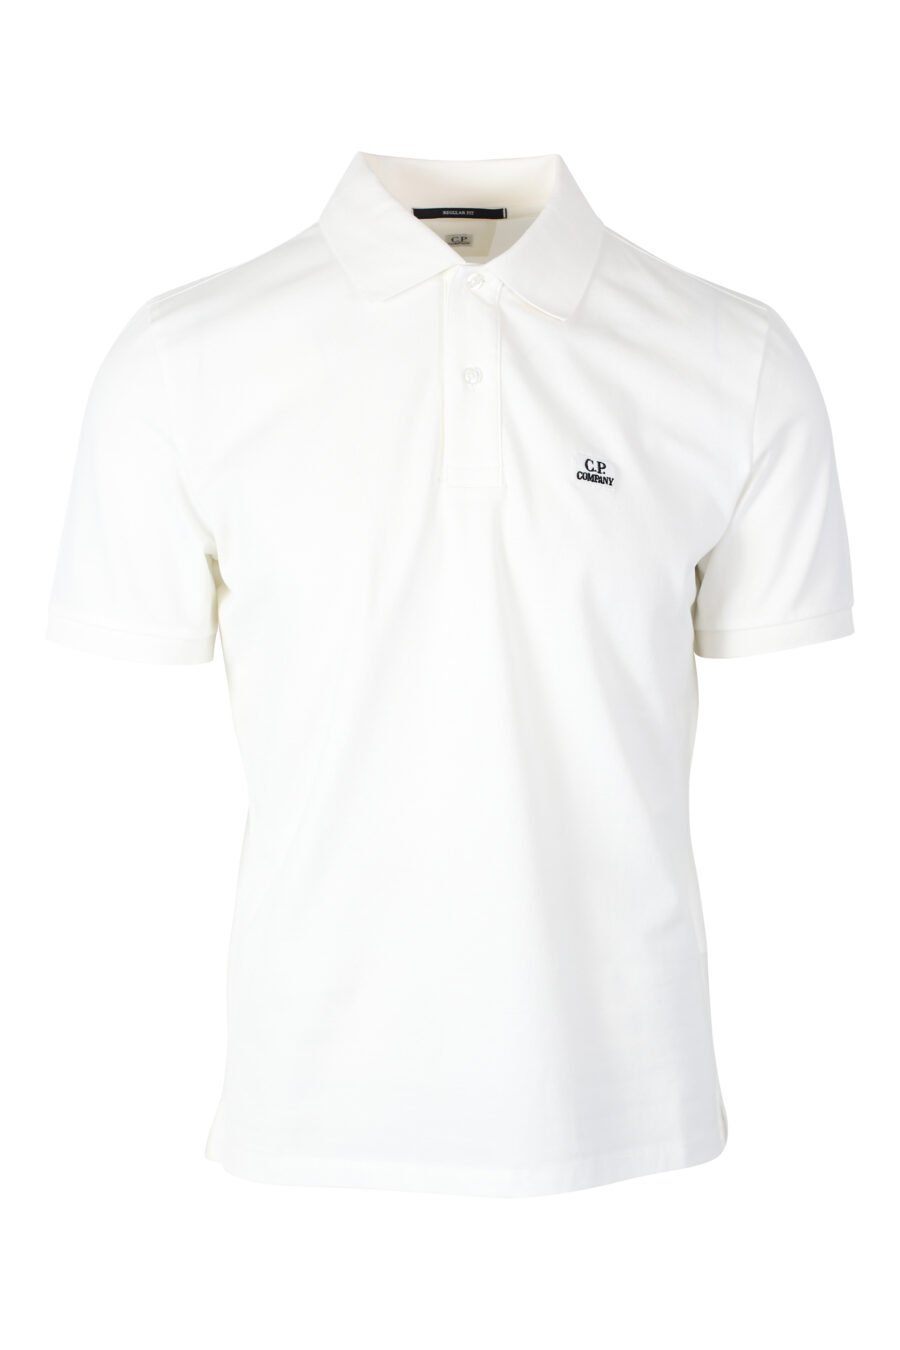 Weißes Poloshirt mit kreisförmigem Mini-Logo - IMG 2381 1